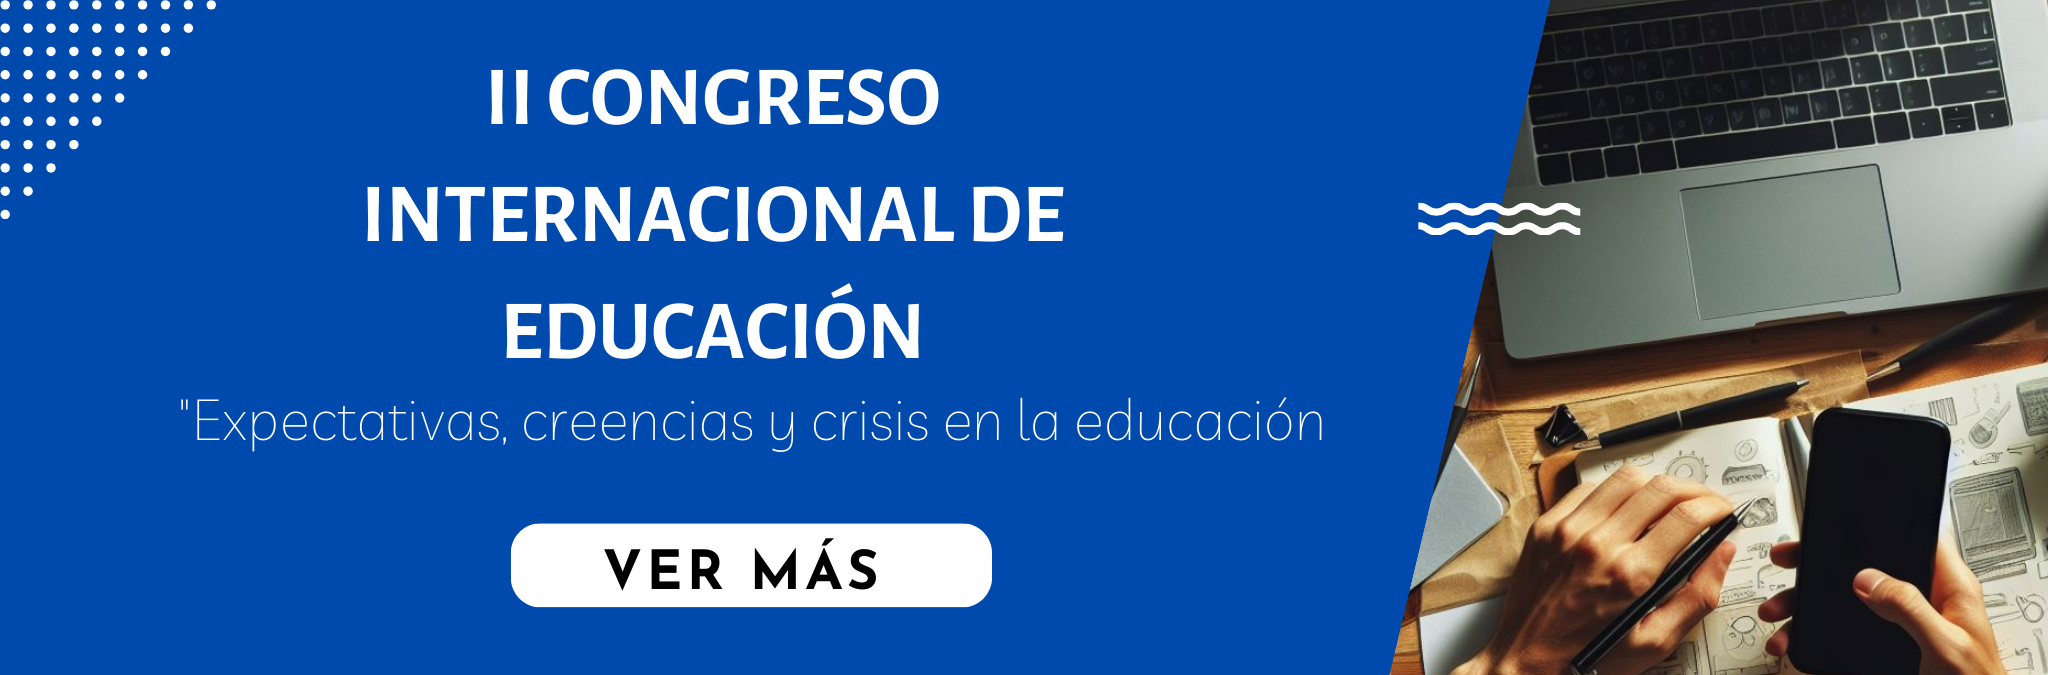 II Congreso Internacional de Educación 